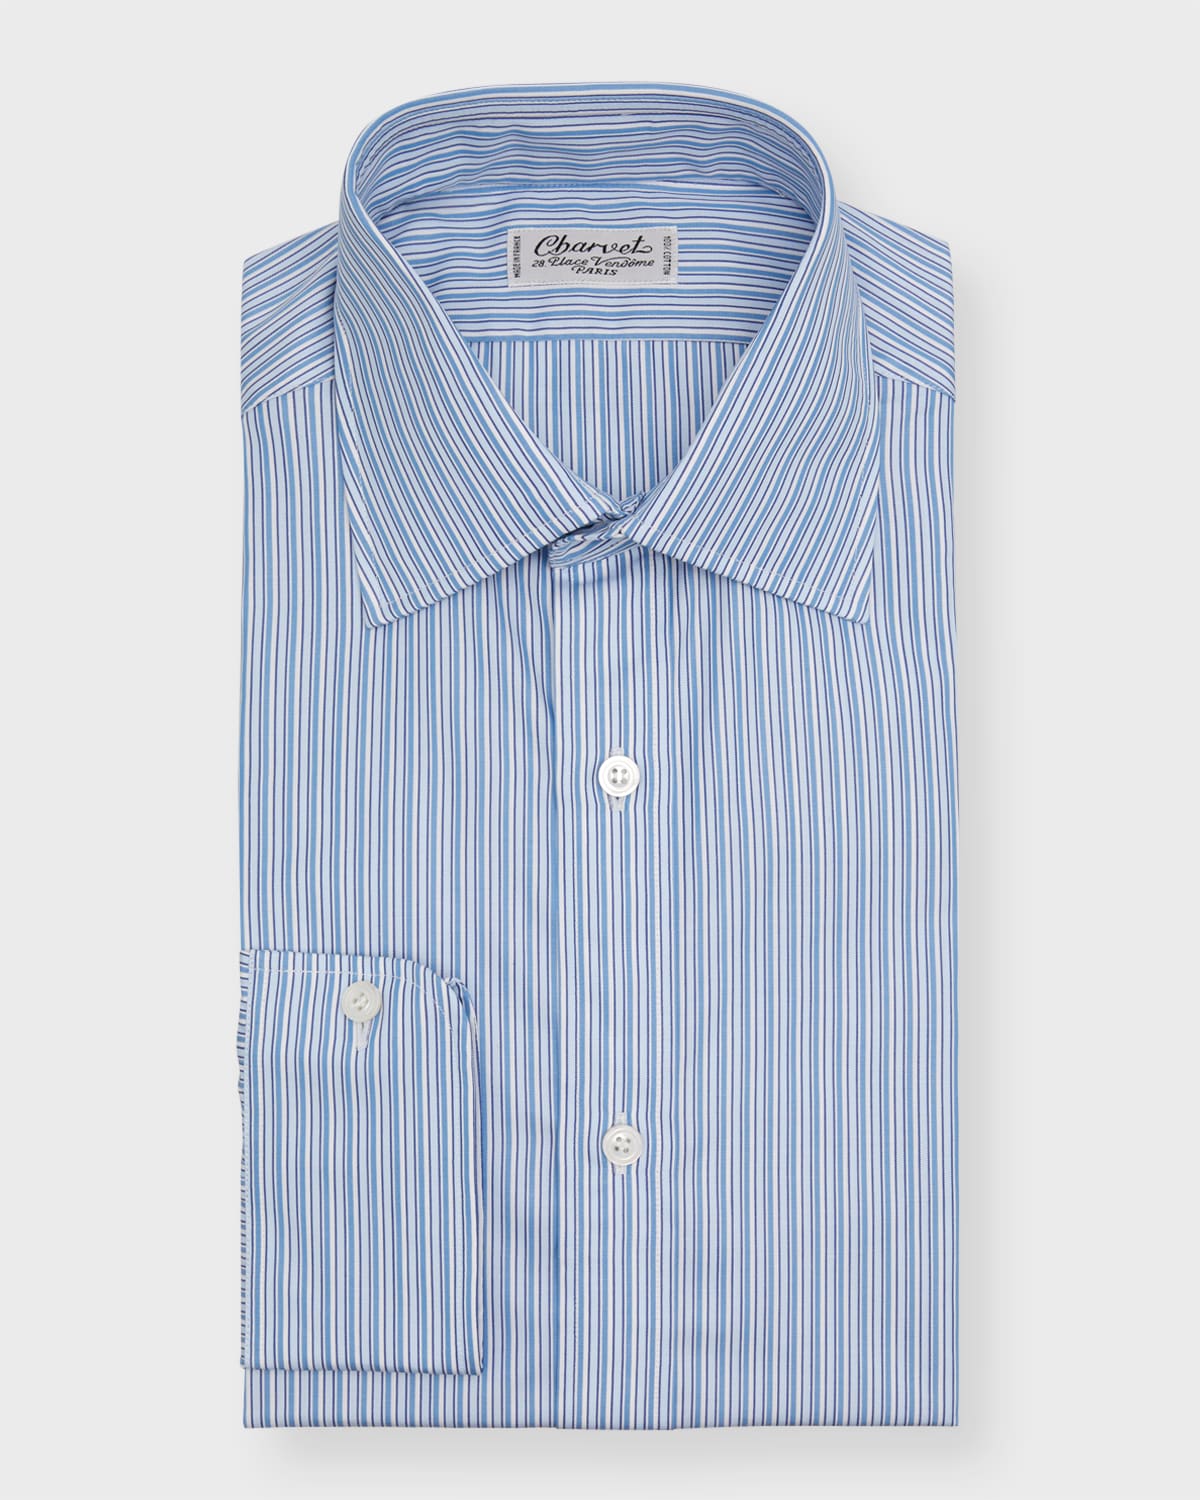 Charvet Men's Cotton Multi-stripe Dress Shirt In Blue